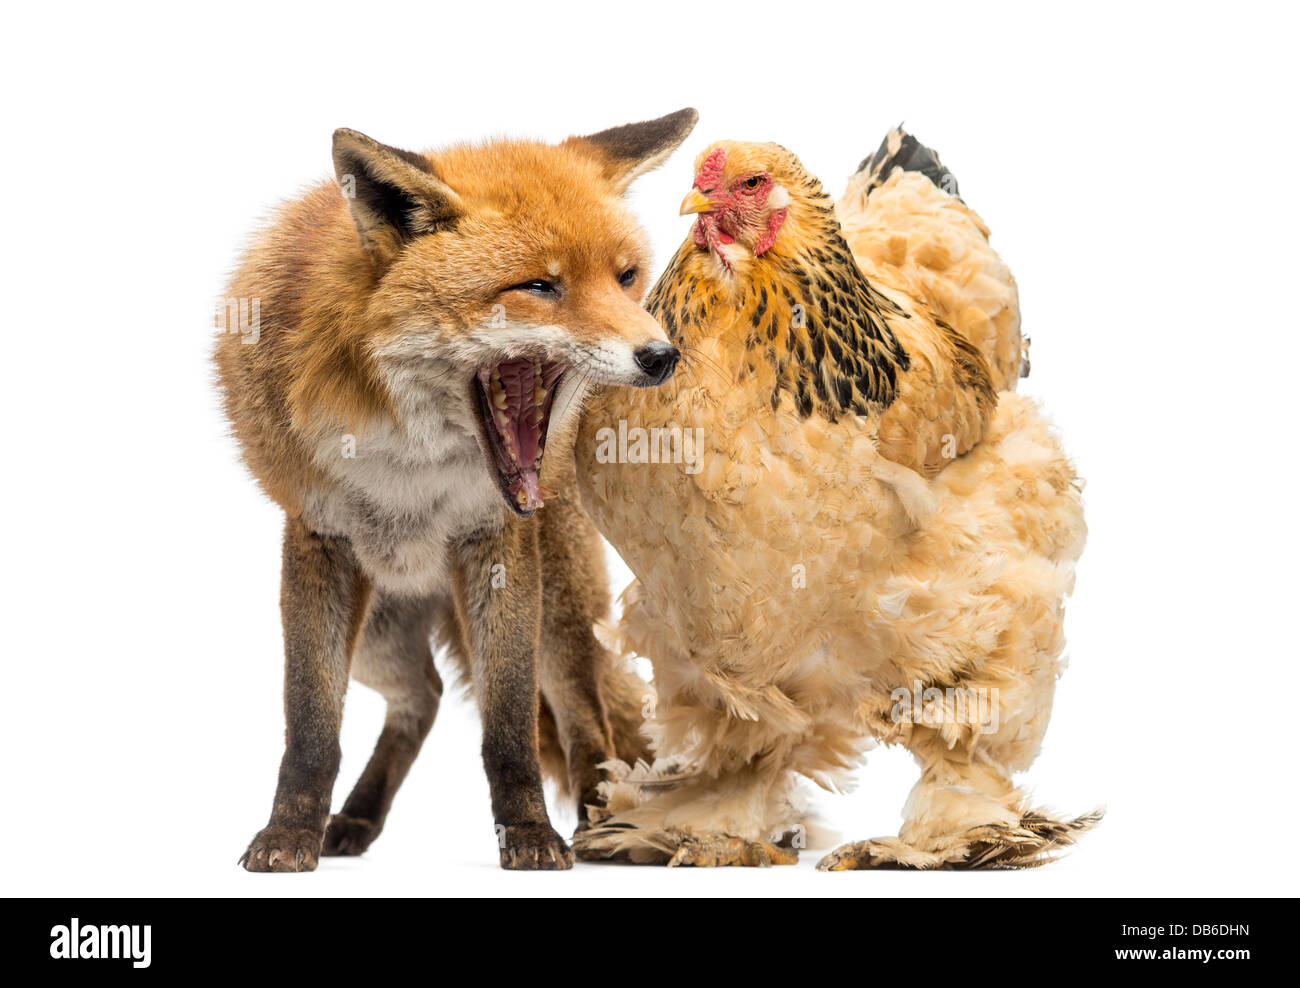 Le renard roux, Vulpes vulpes, bâillant à côté de poule contre fond blanc Banque D'Images